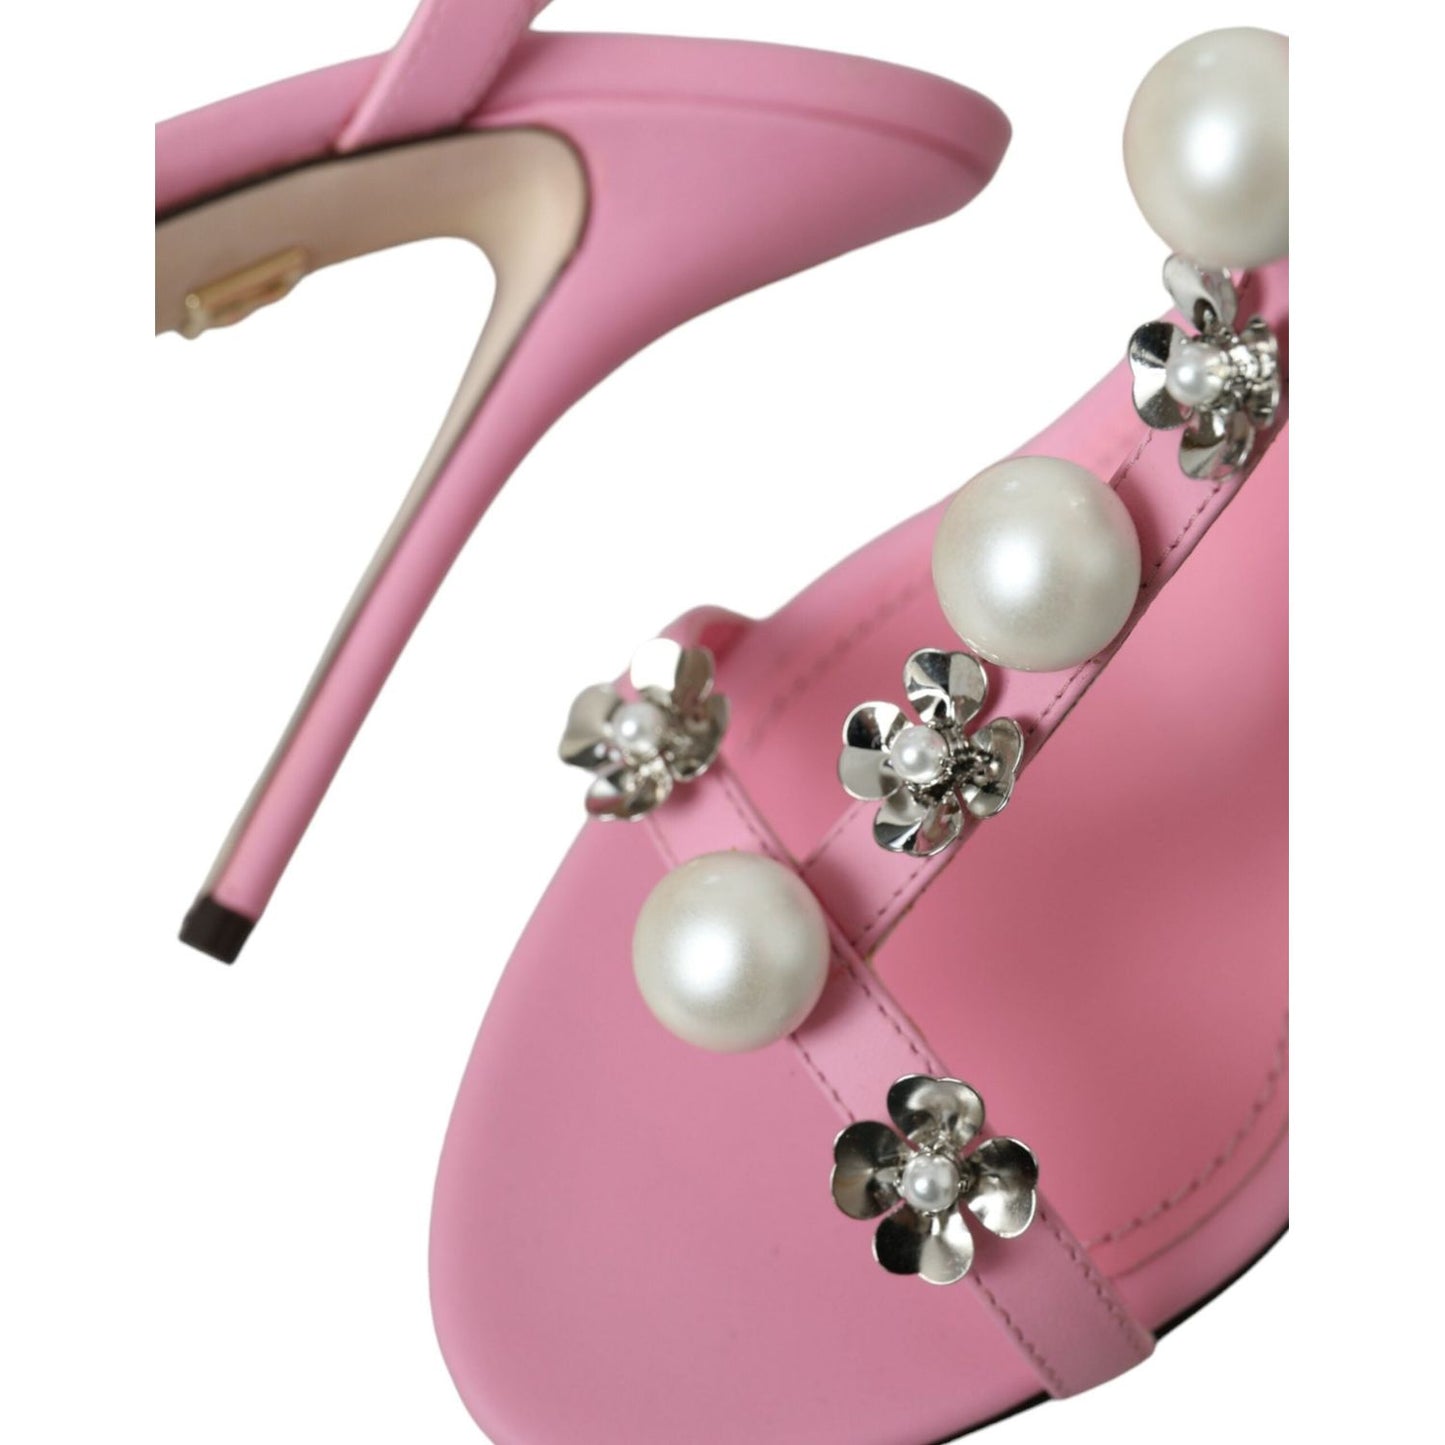 Dolce & Gabbana Pink Leather Embellished Heels Sandals Shoes pink-leather-embellished-heels-sandals-shoes